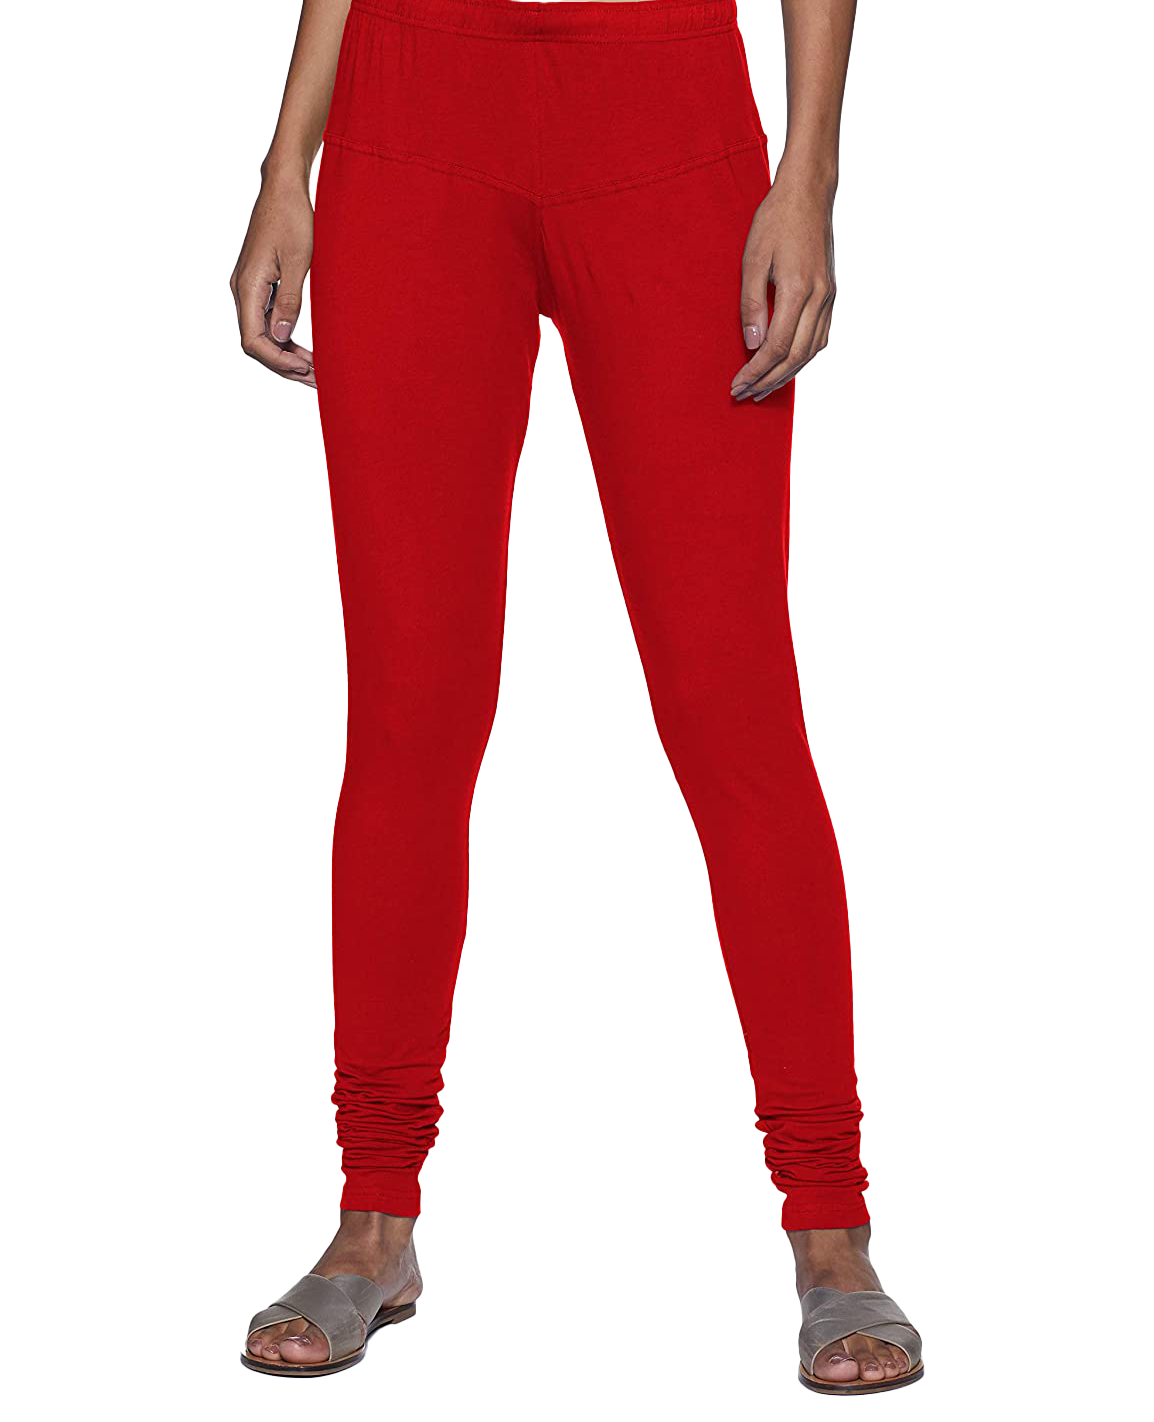 Buy Dollar Missy Black & Red Cotton Leggings ( Pack of 2) for Women Online  @ Tata CLiQ